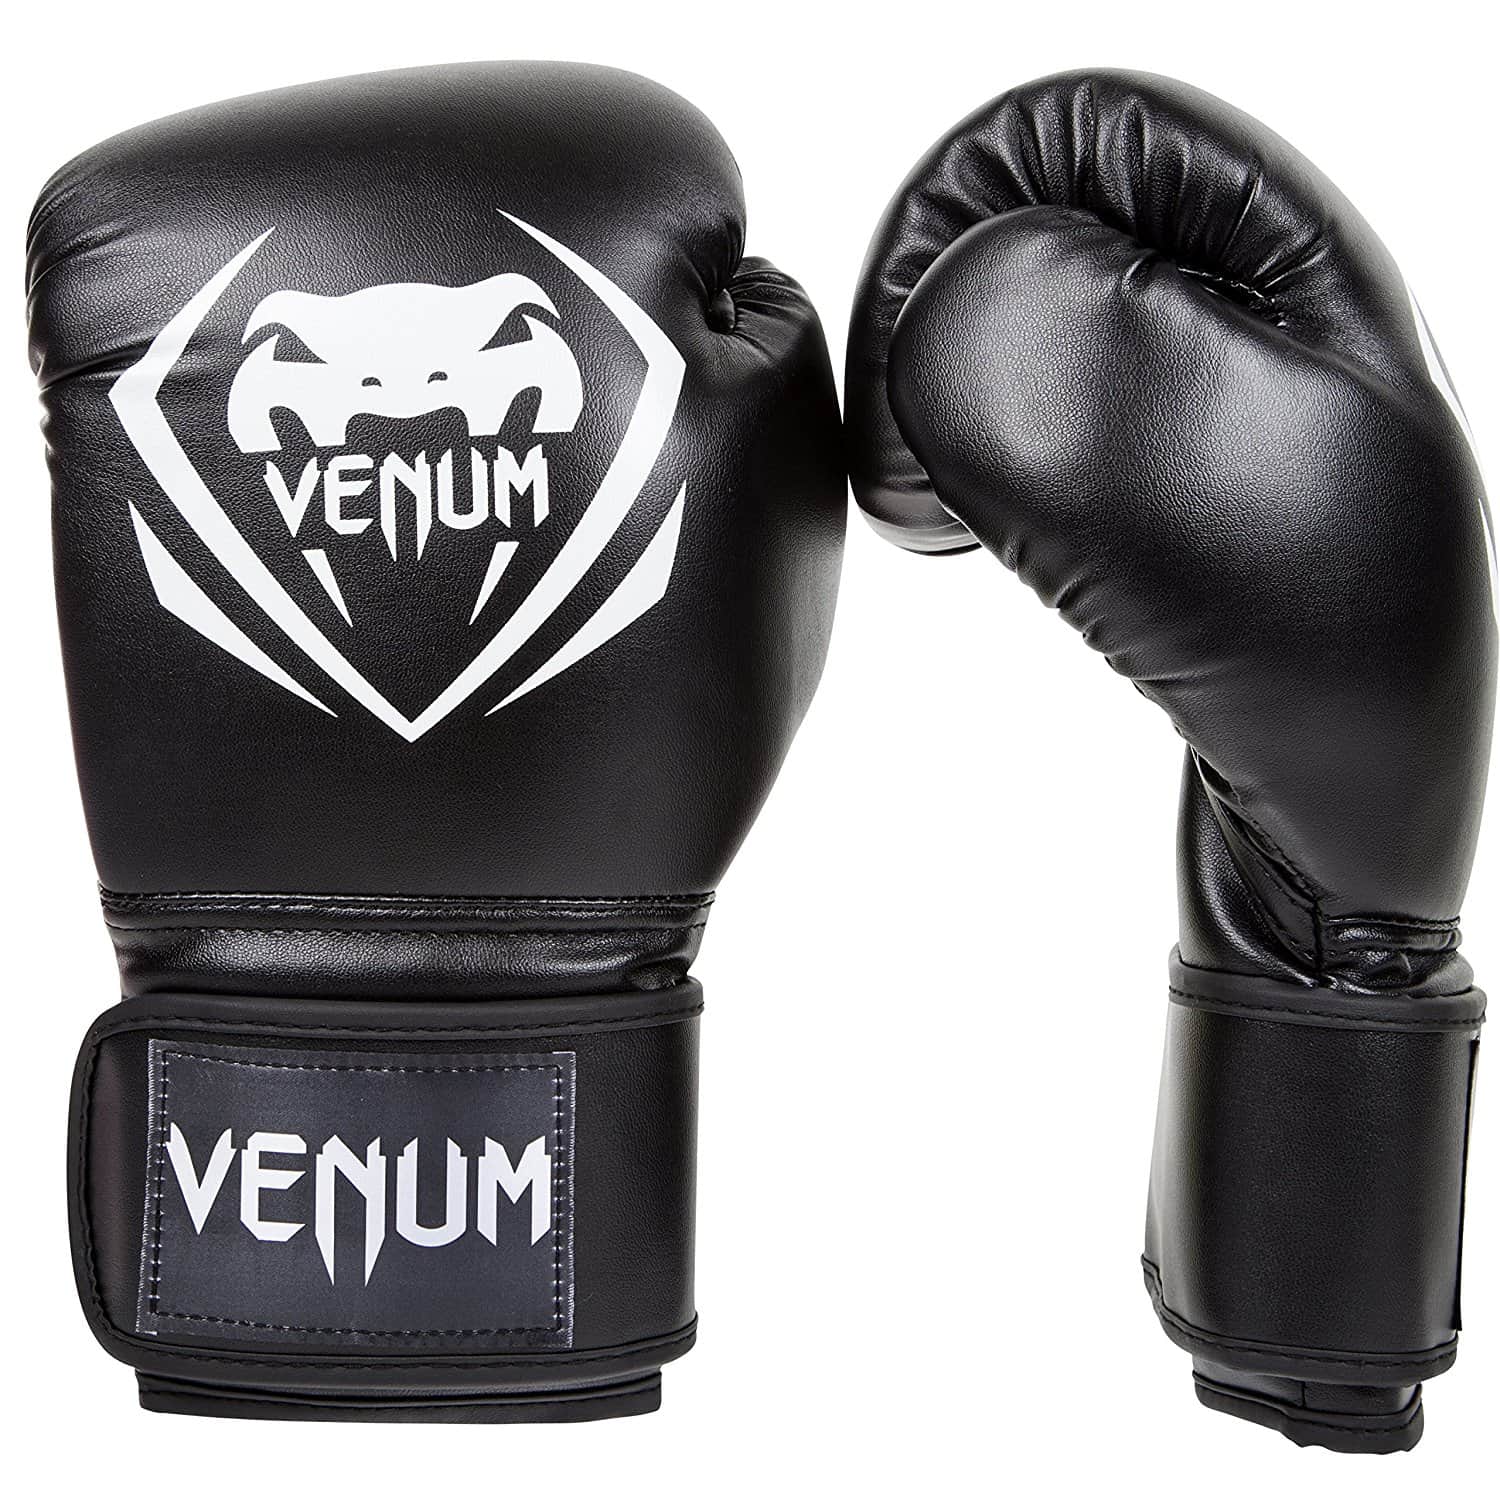 Venum contender gloves